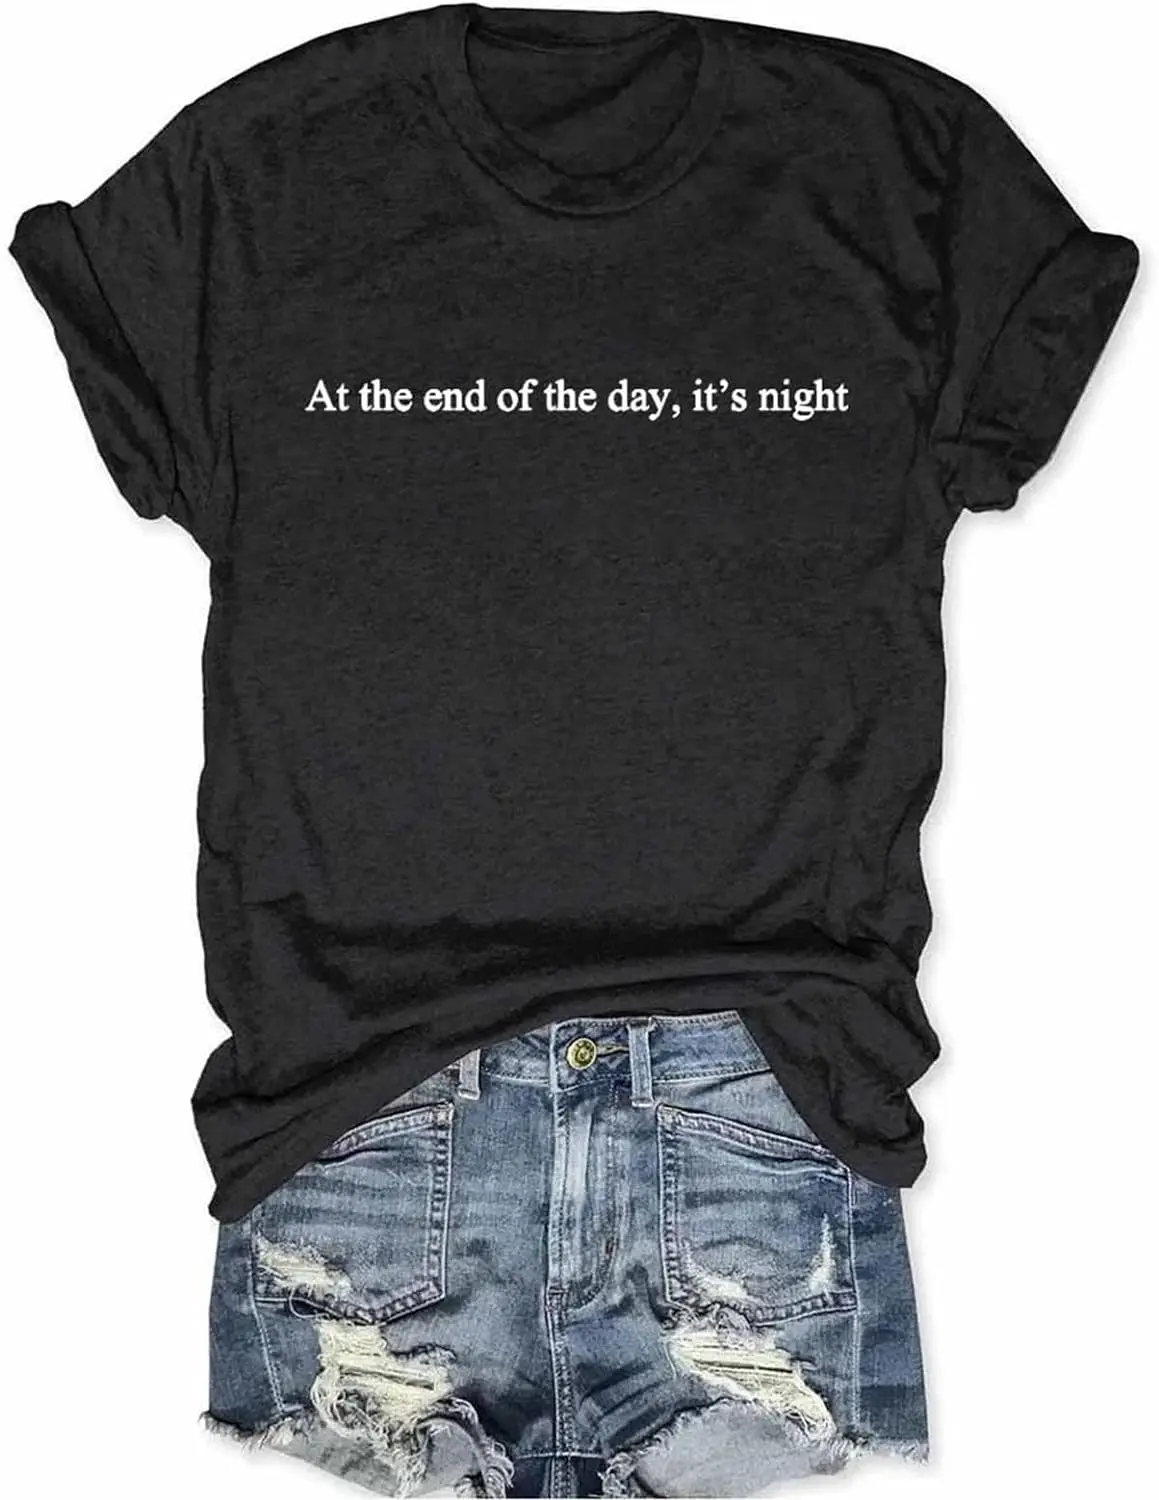 No final do dia t-shirt, camisa, camisa da noite